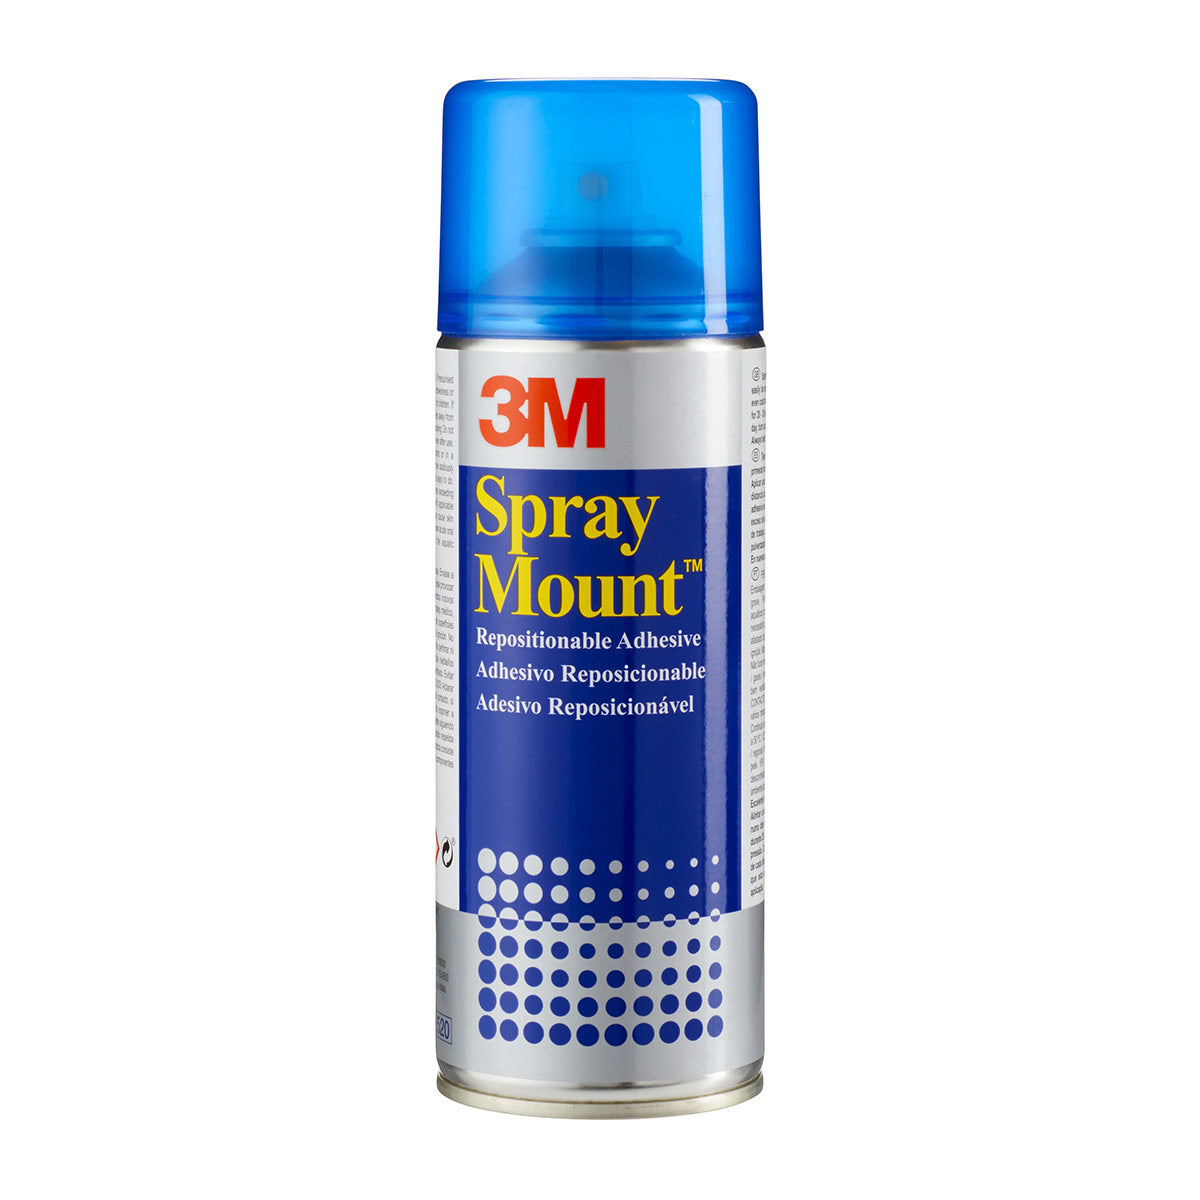 Monte spray da 3 m - riposizionabili - 400 ml